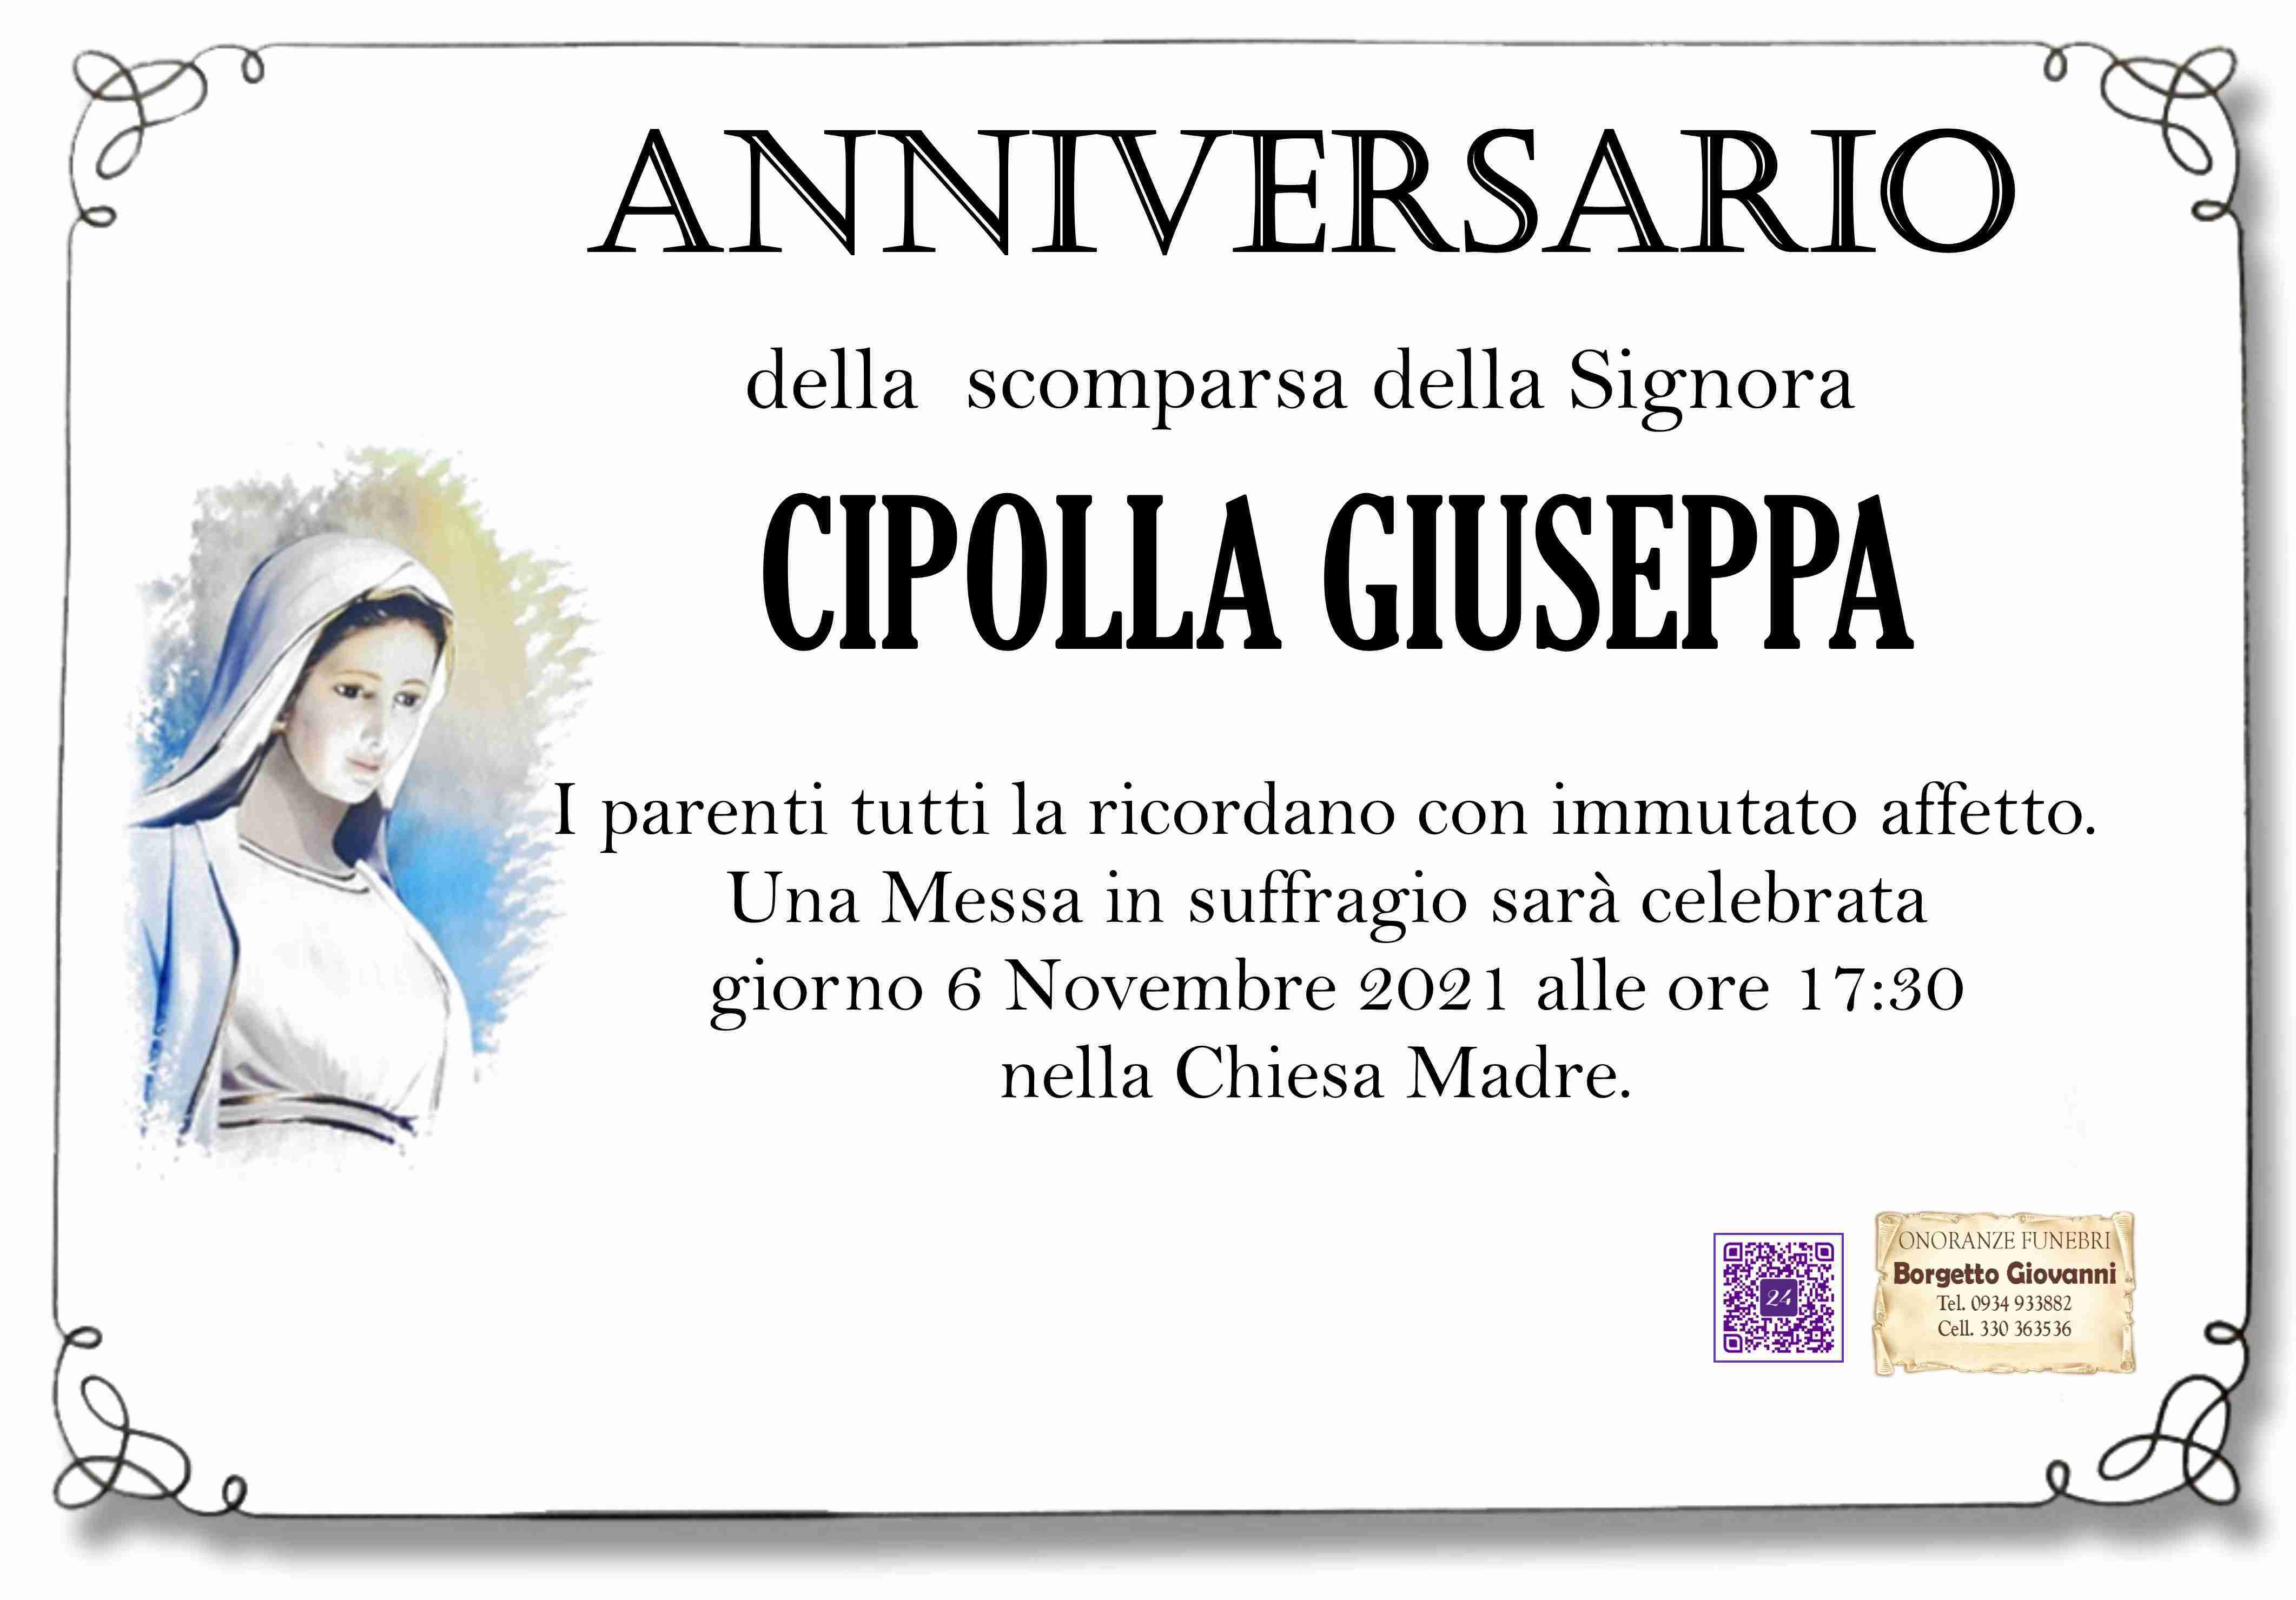 Giuseppa Cipolla